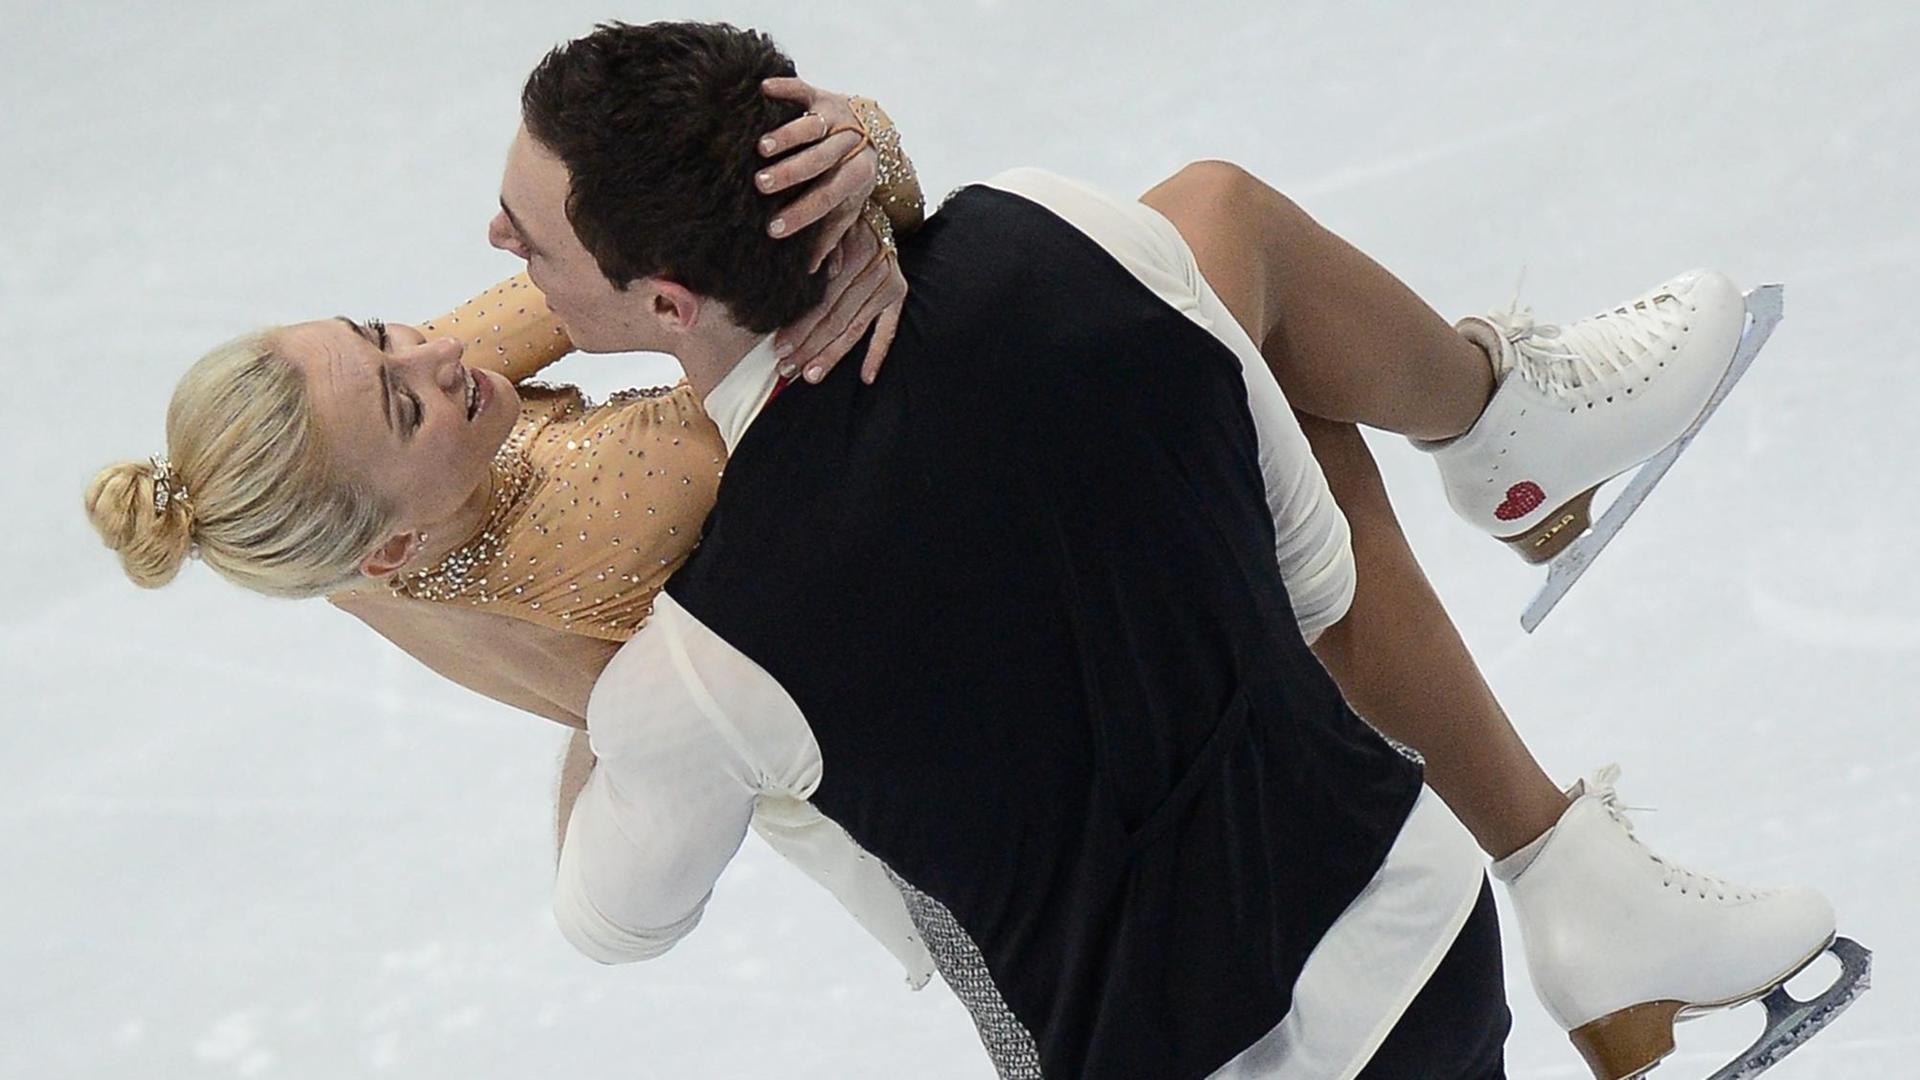 Massot und Sawtschenko halten sich auf dem Eis in den Armen. 